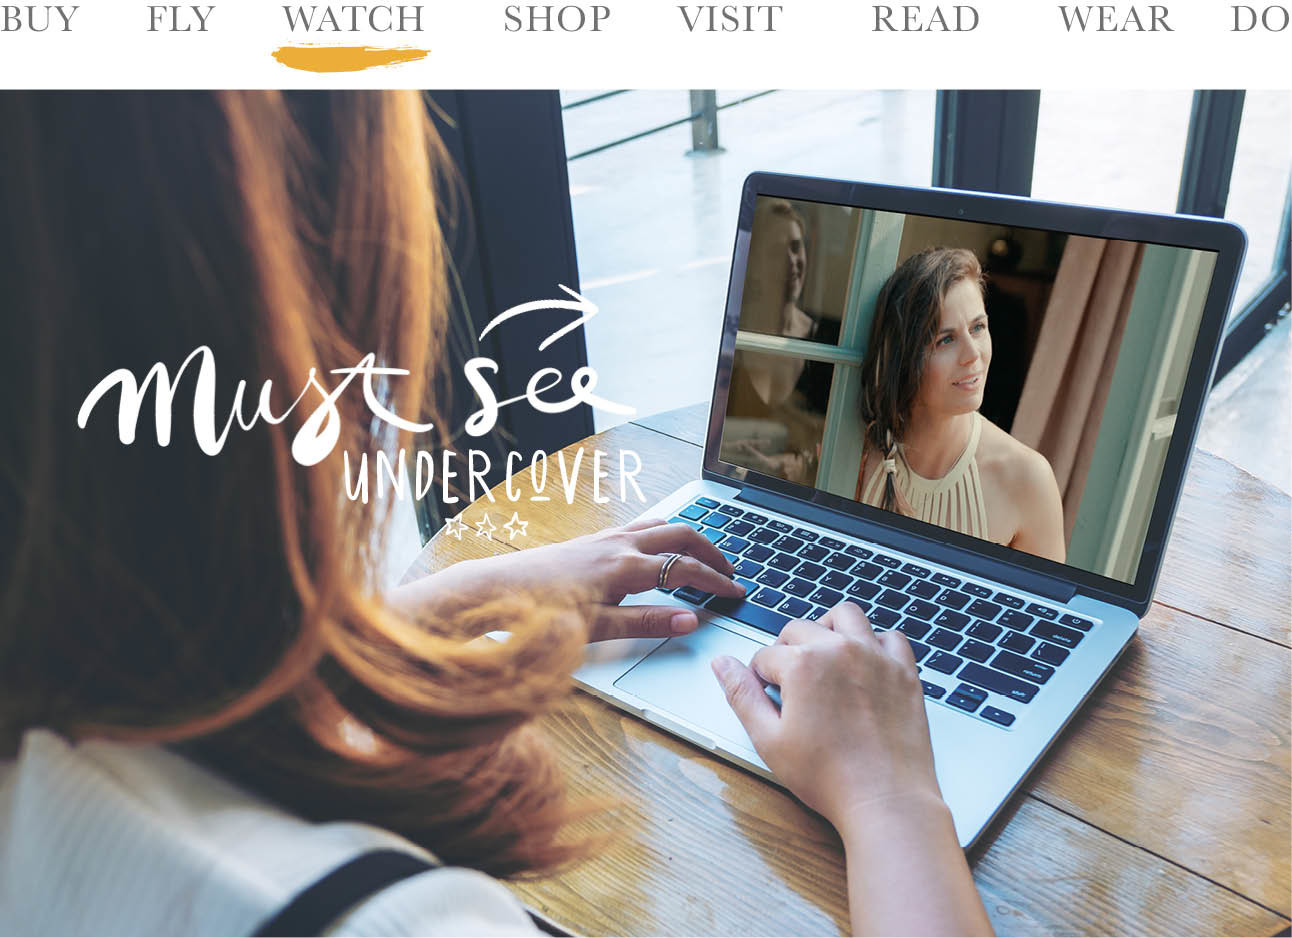 vrouw achter laptop kijkt naar undercover serie op netflix